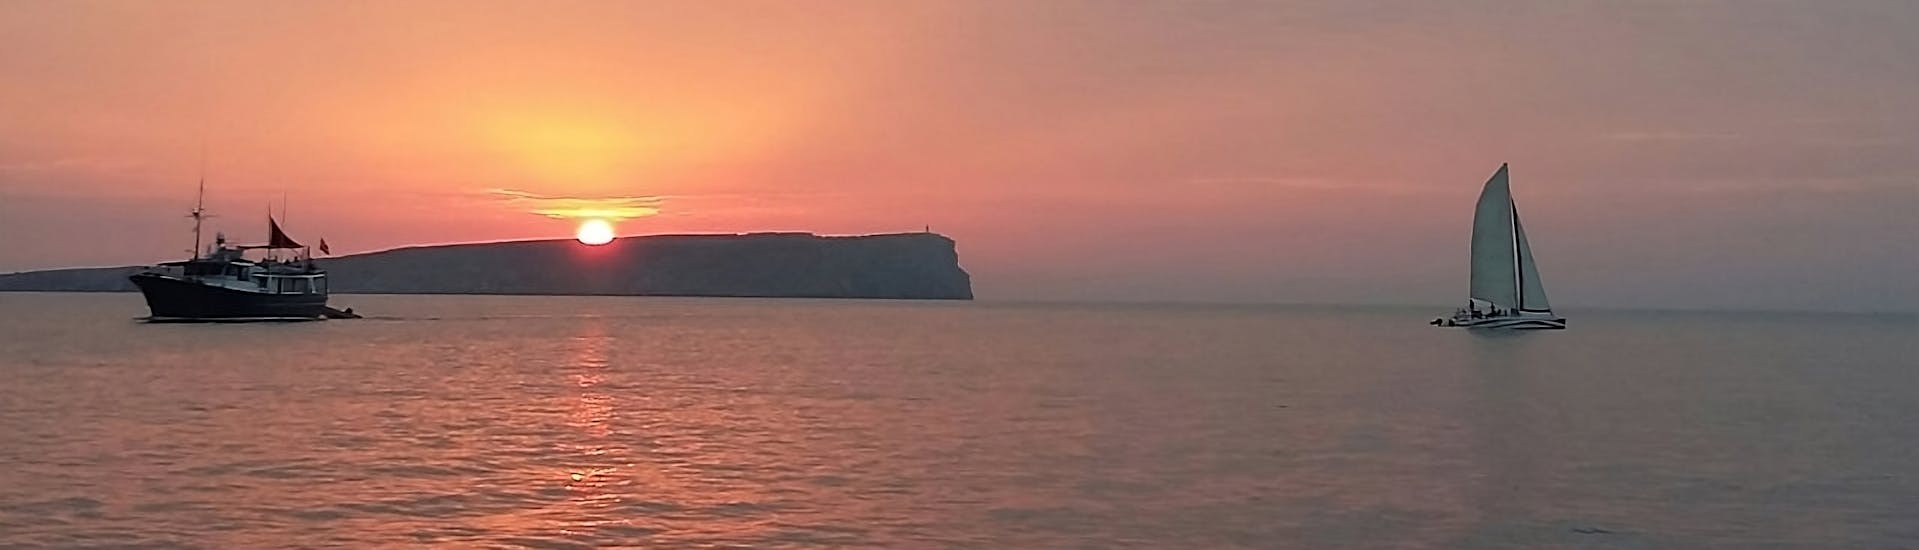 Il tramonto che potrete vedere con Katayak Menorca durante il Giro in catamarano al tramonto da Fornells con open bar.